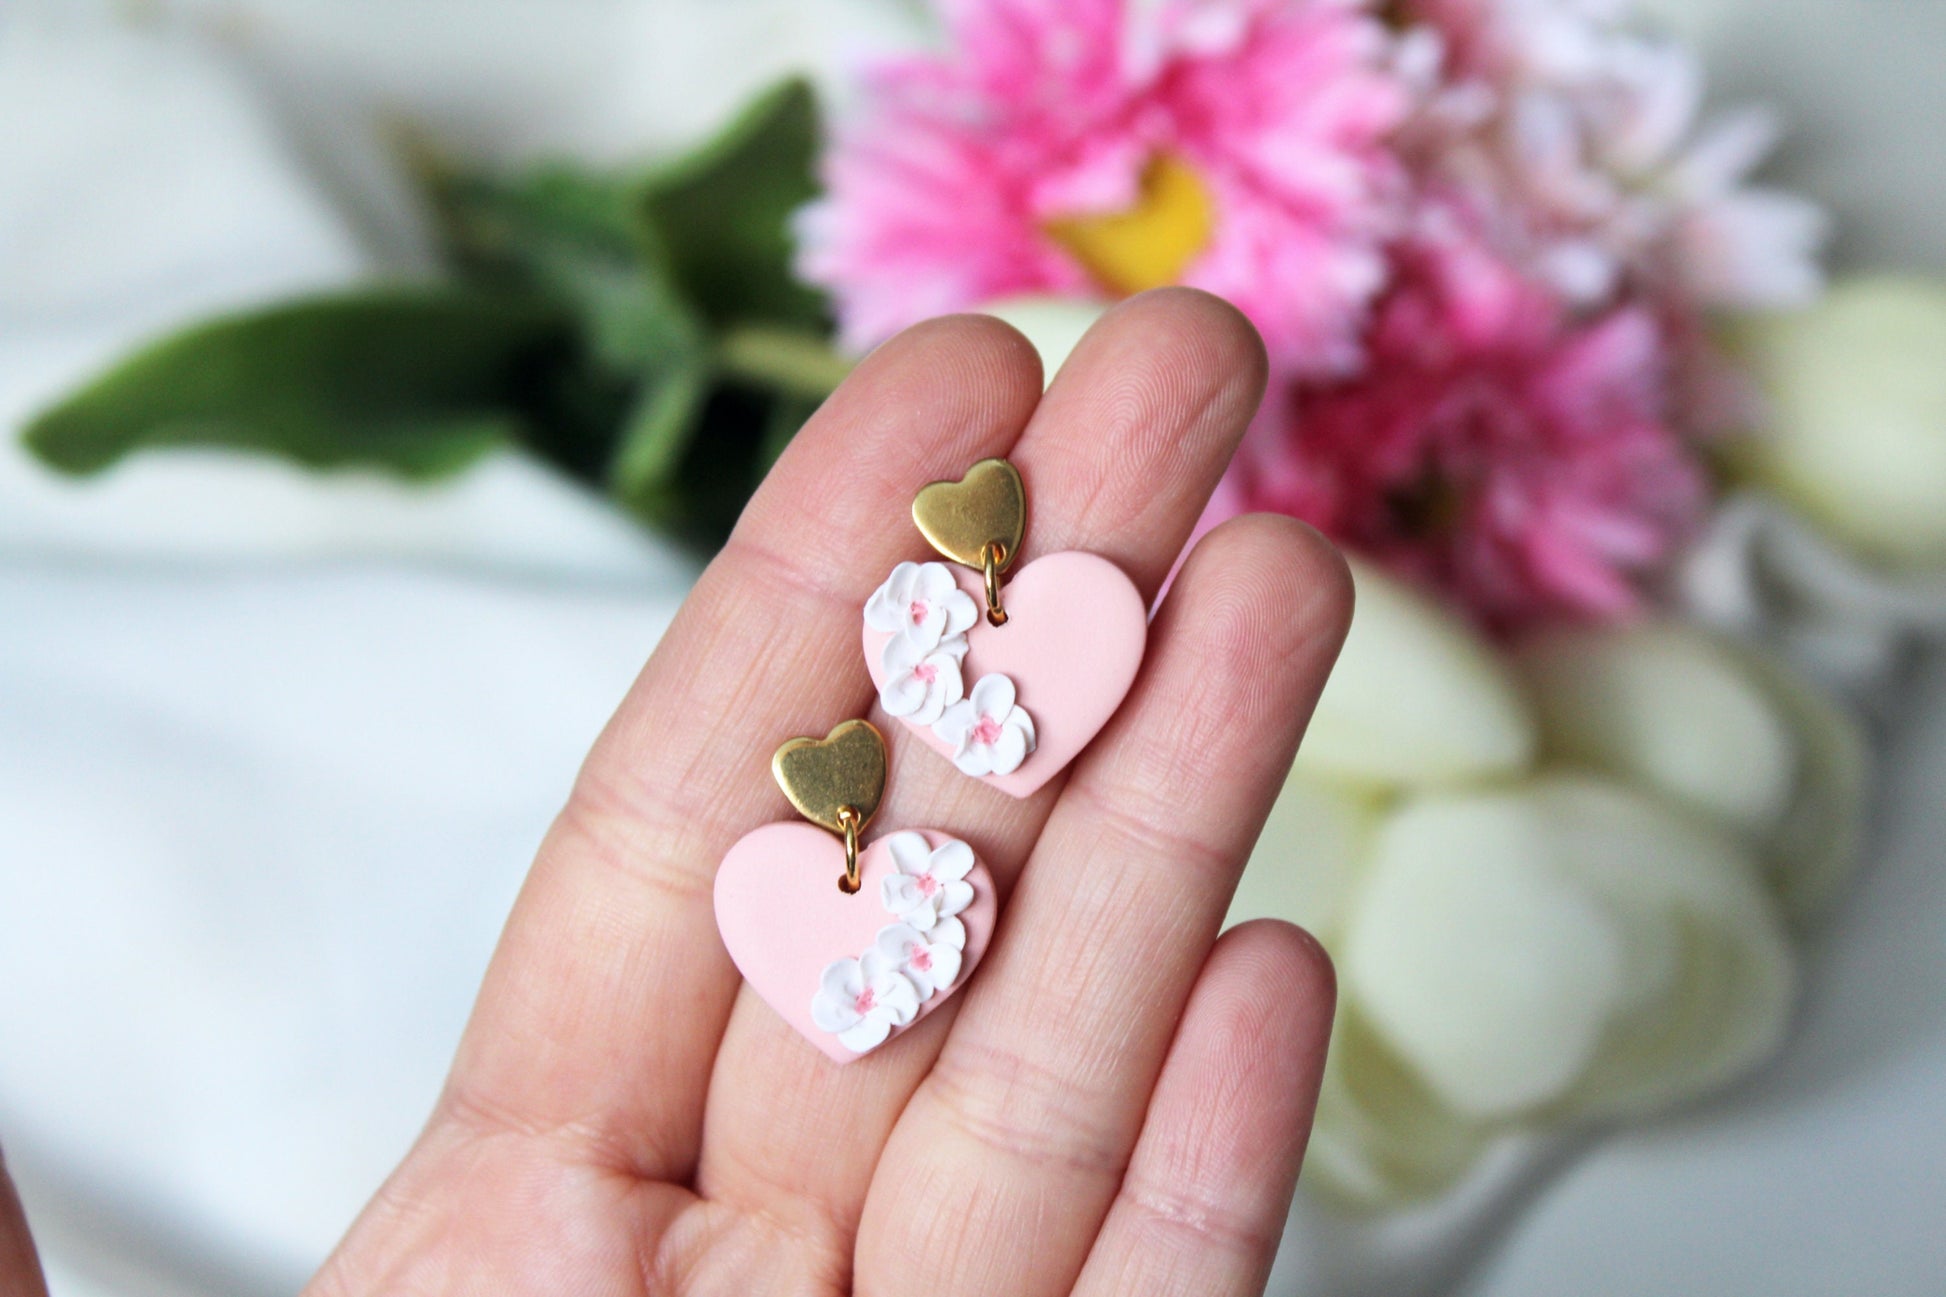 Heart Earrings, Valentine's Day Earrings, Floral Earrings